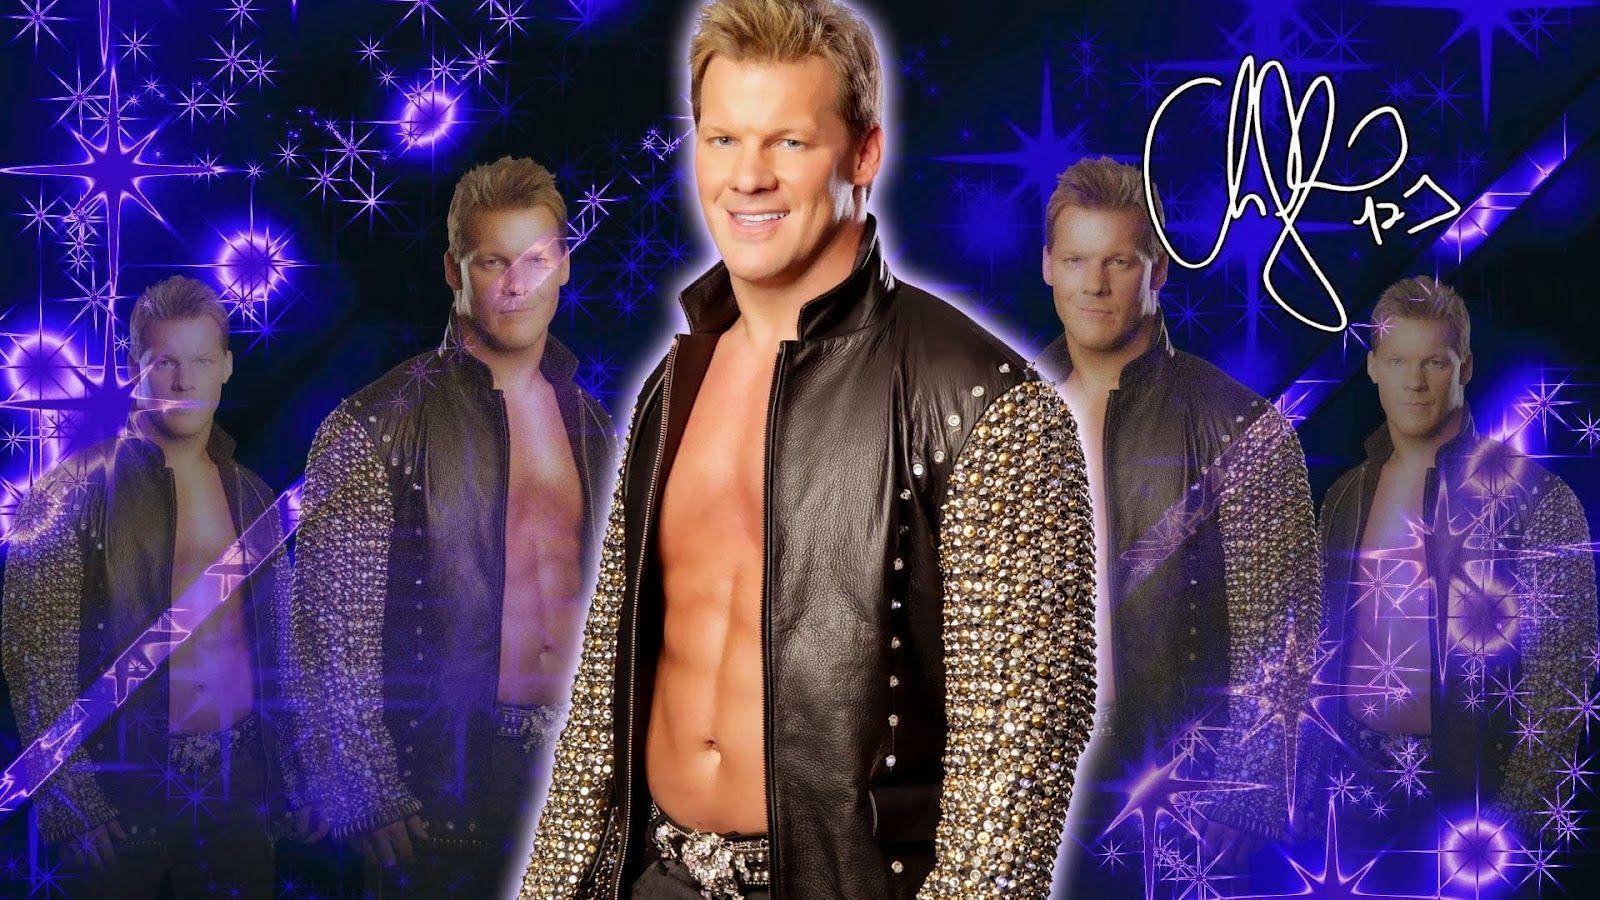 Chris Jericho HD Wallpaper Free Download. WWE HD WALLPAPER FREE